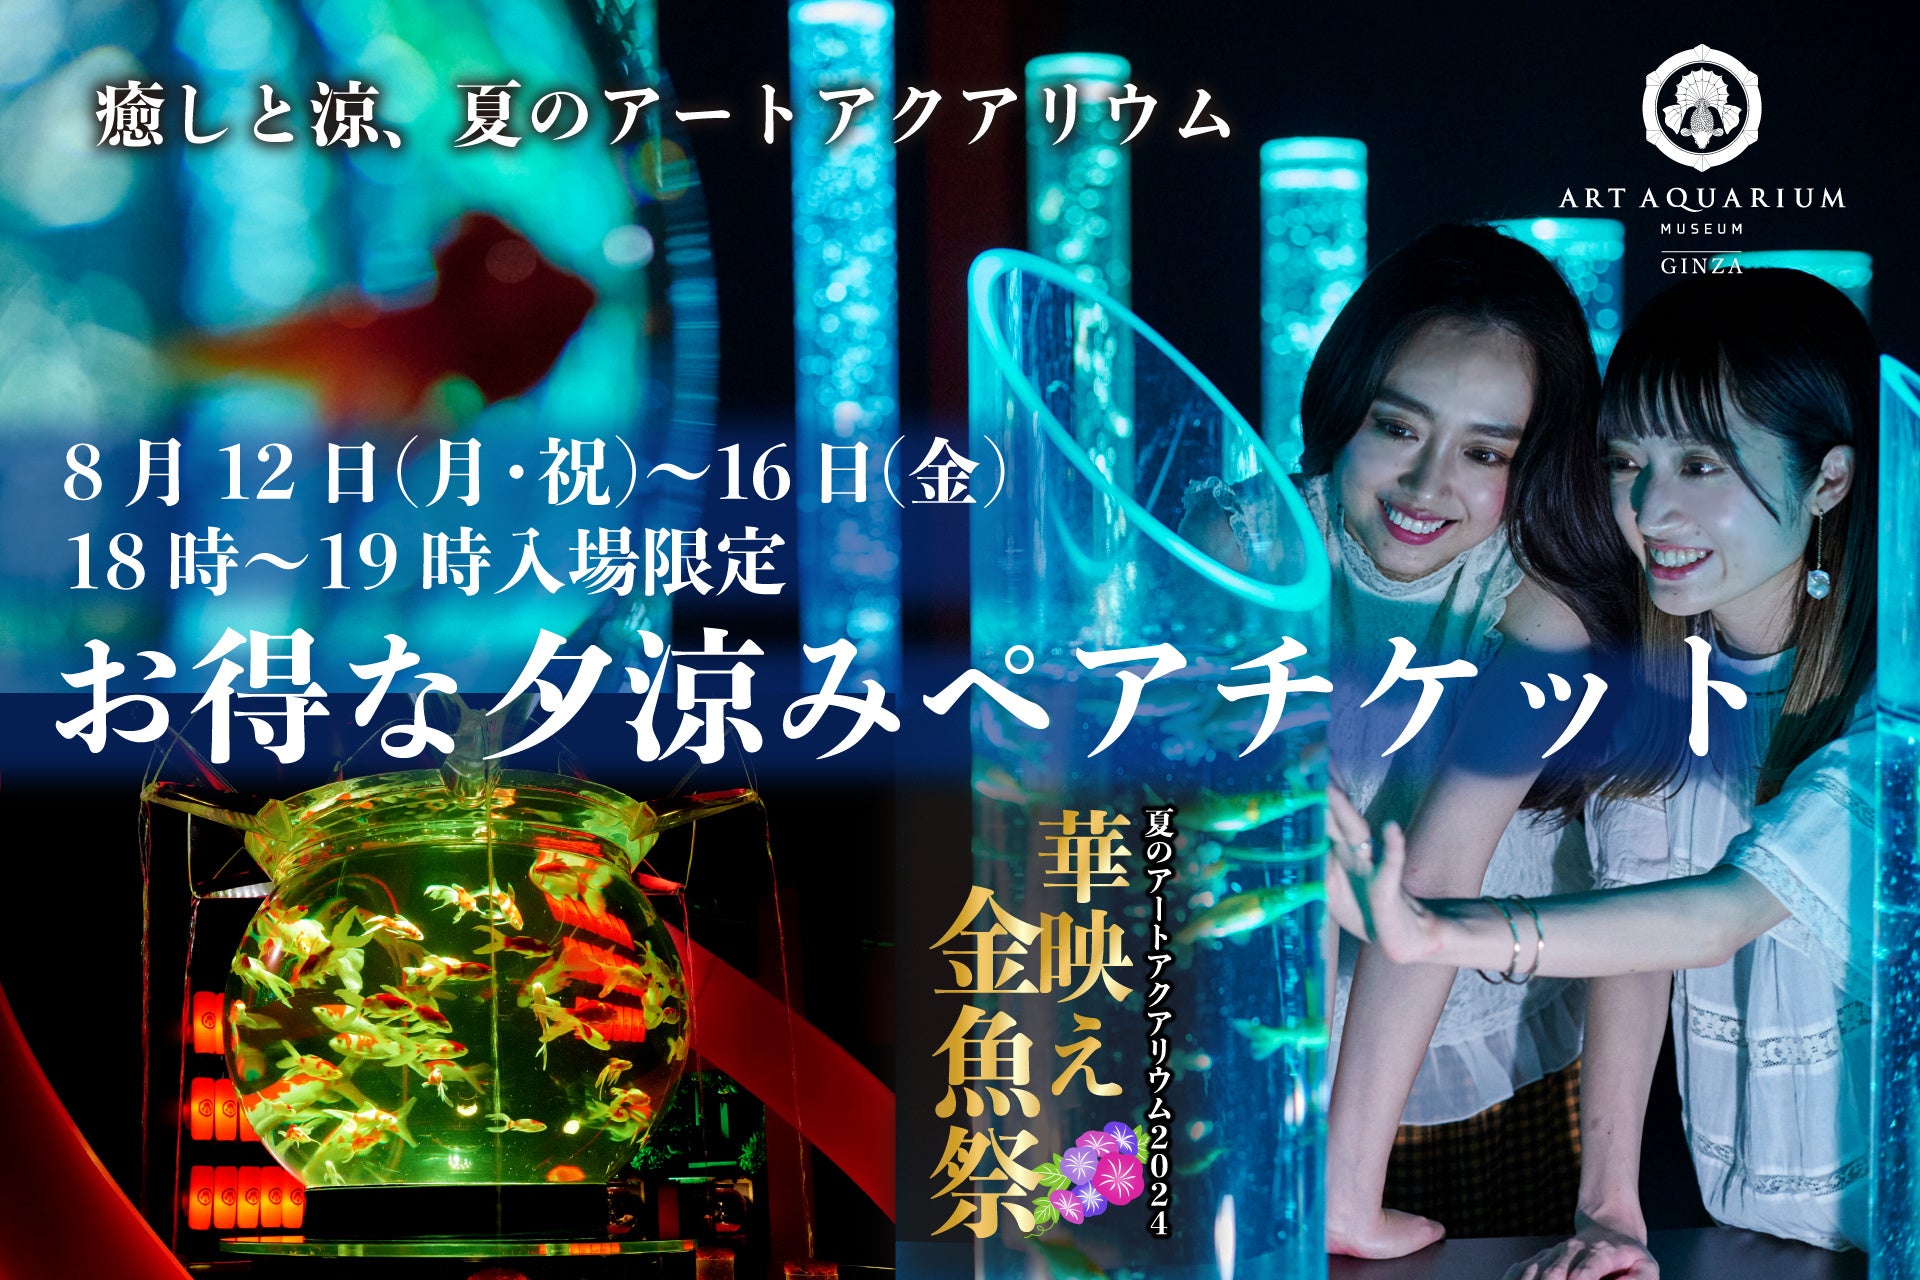 【神戸須磨シーワールド】“スマシー”で夏の夜を満喫！特別営業を実施　18時からお得に入館できる「トワイライトチケット」も登場